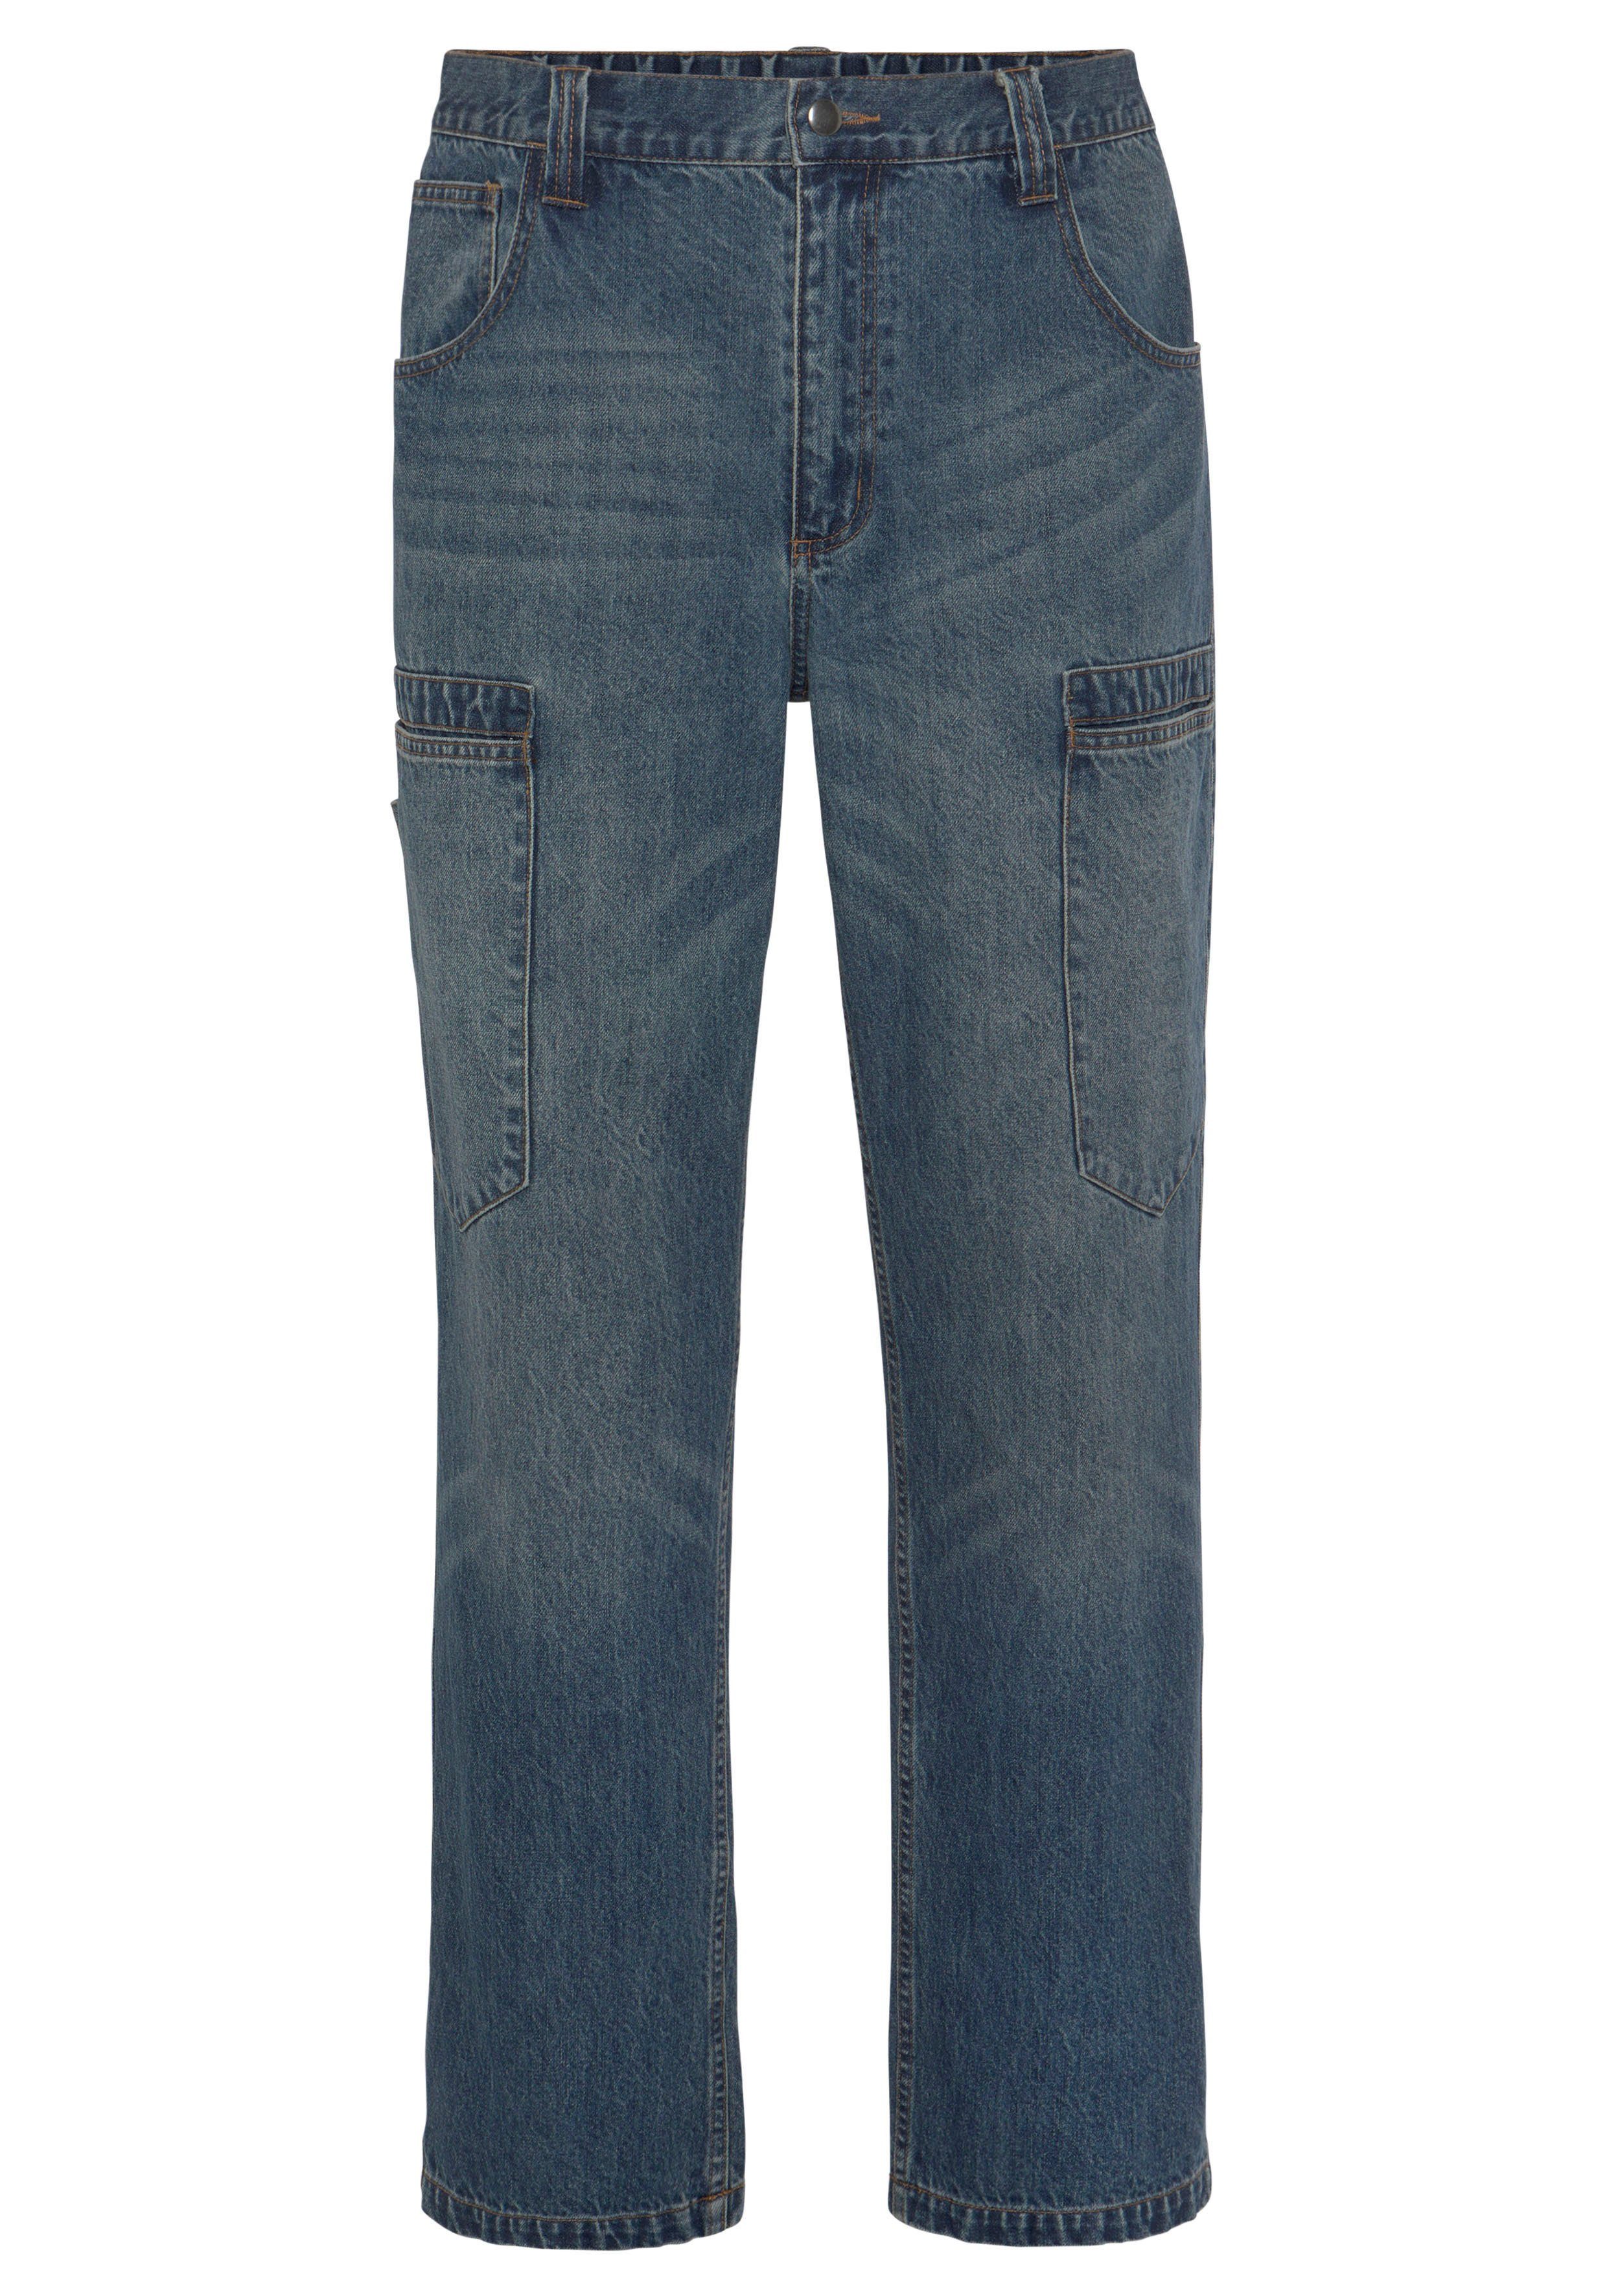 Northern Country Arbeitshose Cargo Jeans (aus 100% Baumwolle, robuster Jeansstoff, comfort fit) mit dehnbarem Bund, mit 6 praktischen Taschen | Baumwollhosen